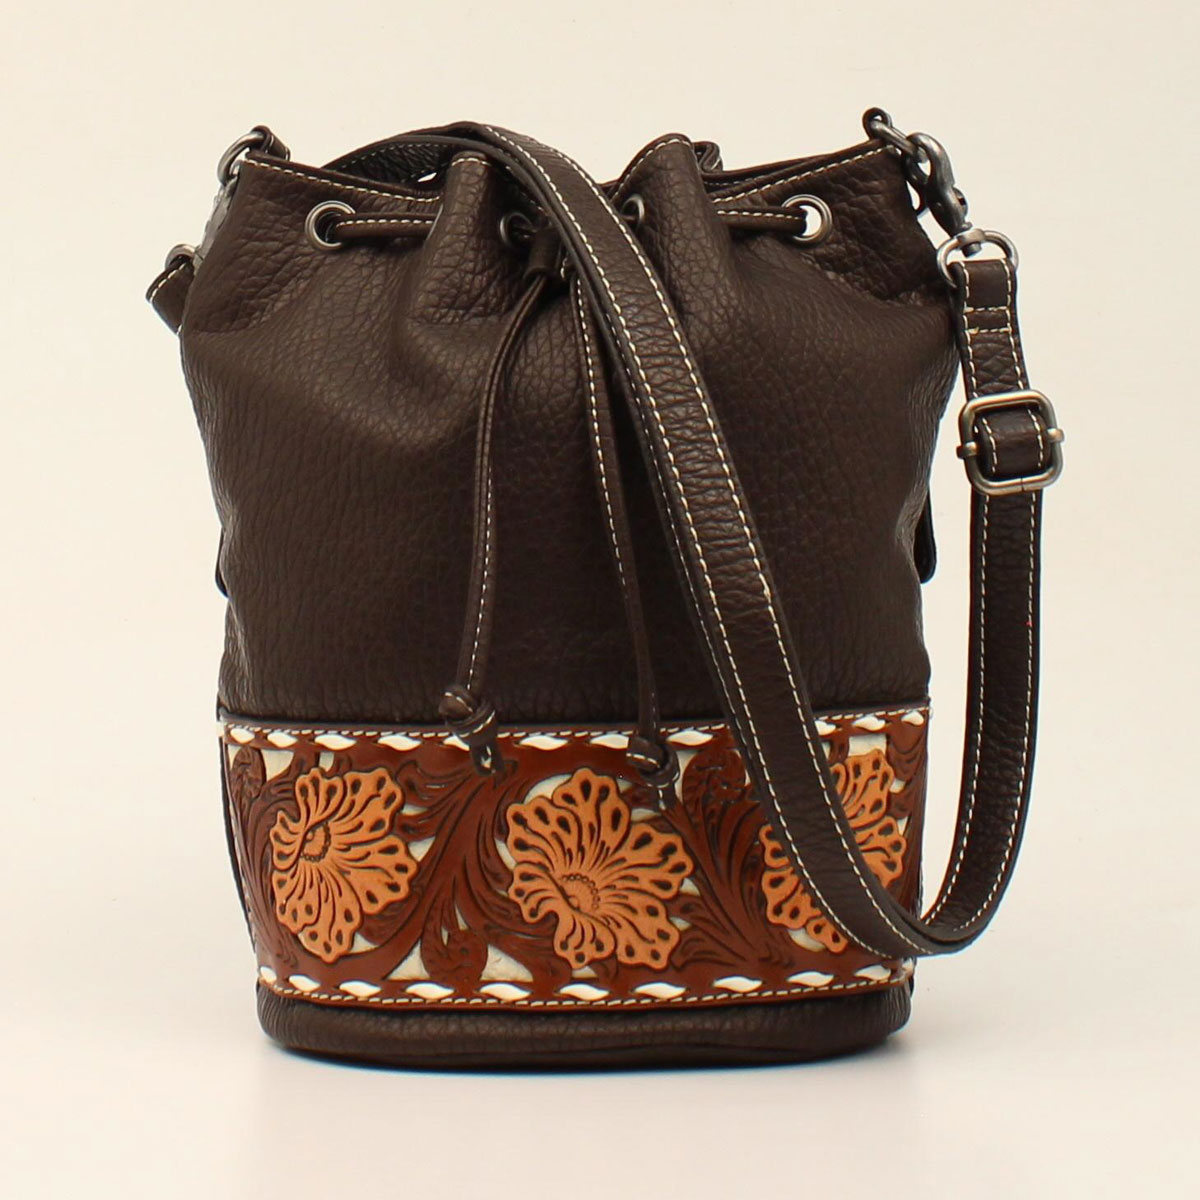 N770002902 Aaliyah Style Bucket Bag, Brown - 10 X 11 X 6 In.